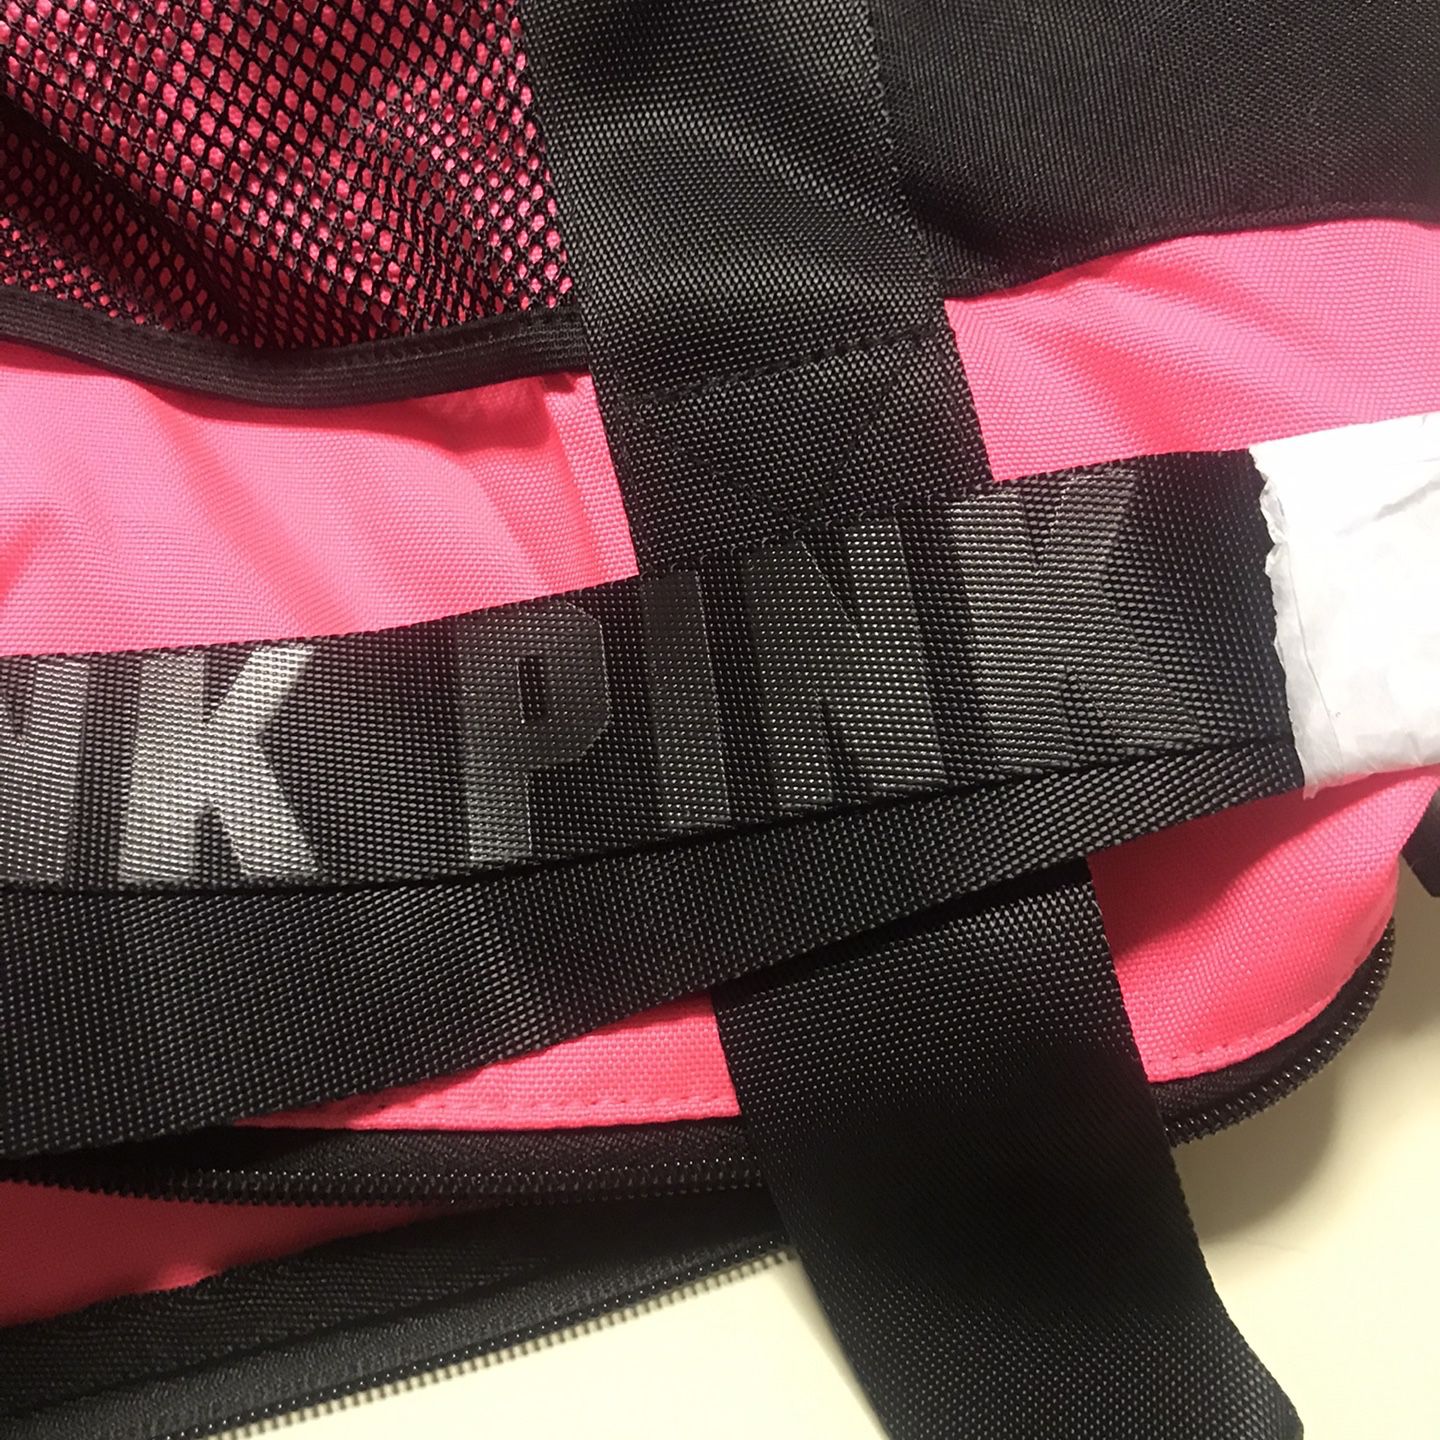 Pink Tote Or Bag